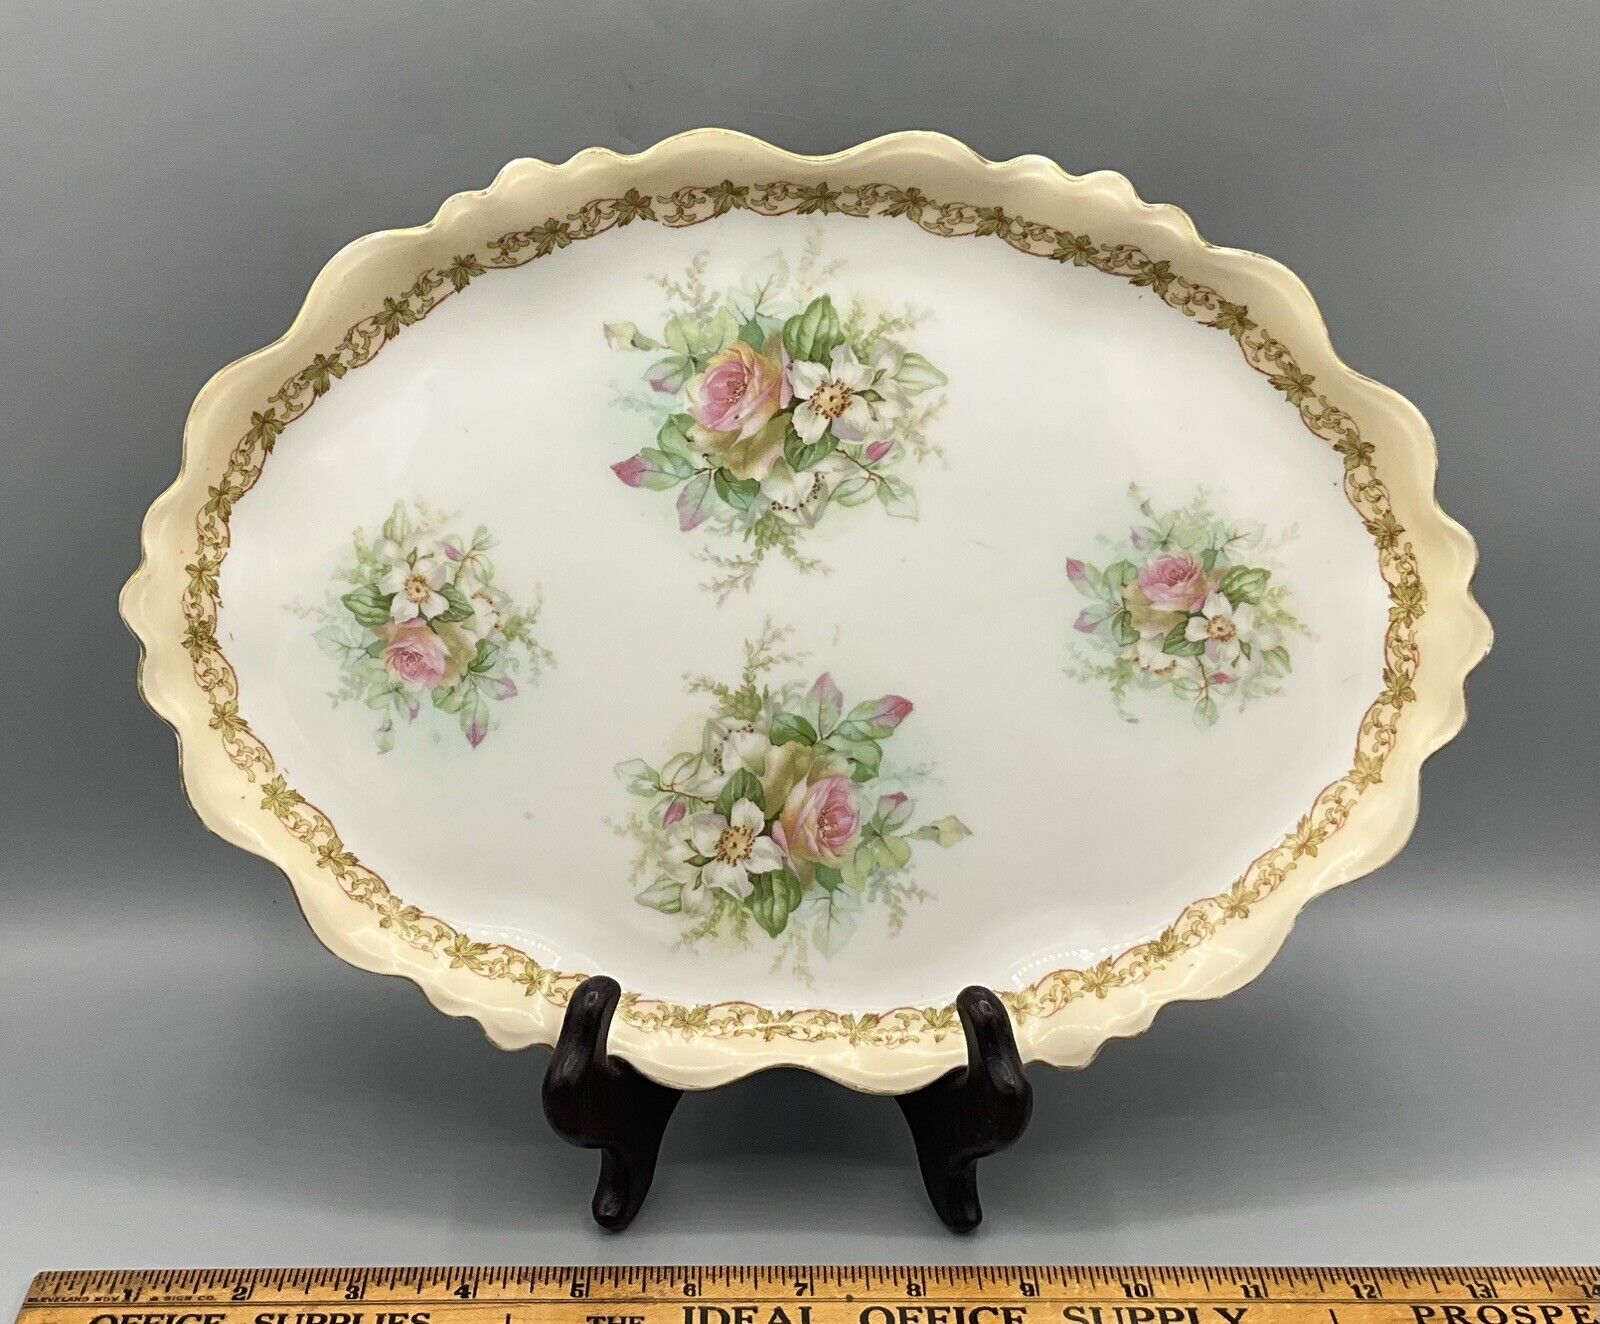 Antique Vtg MZ Austria Habsburg China Porcelain Serving/Dresser 12”x9” Oval Tray